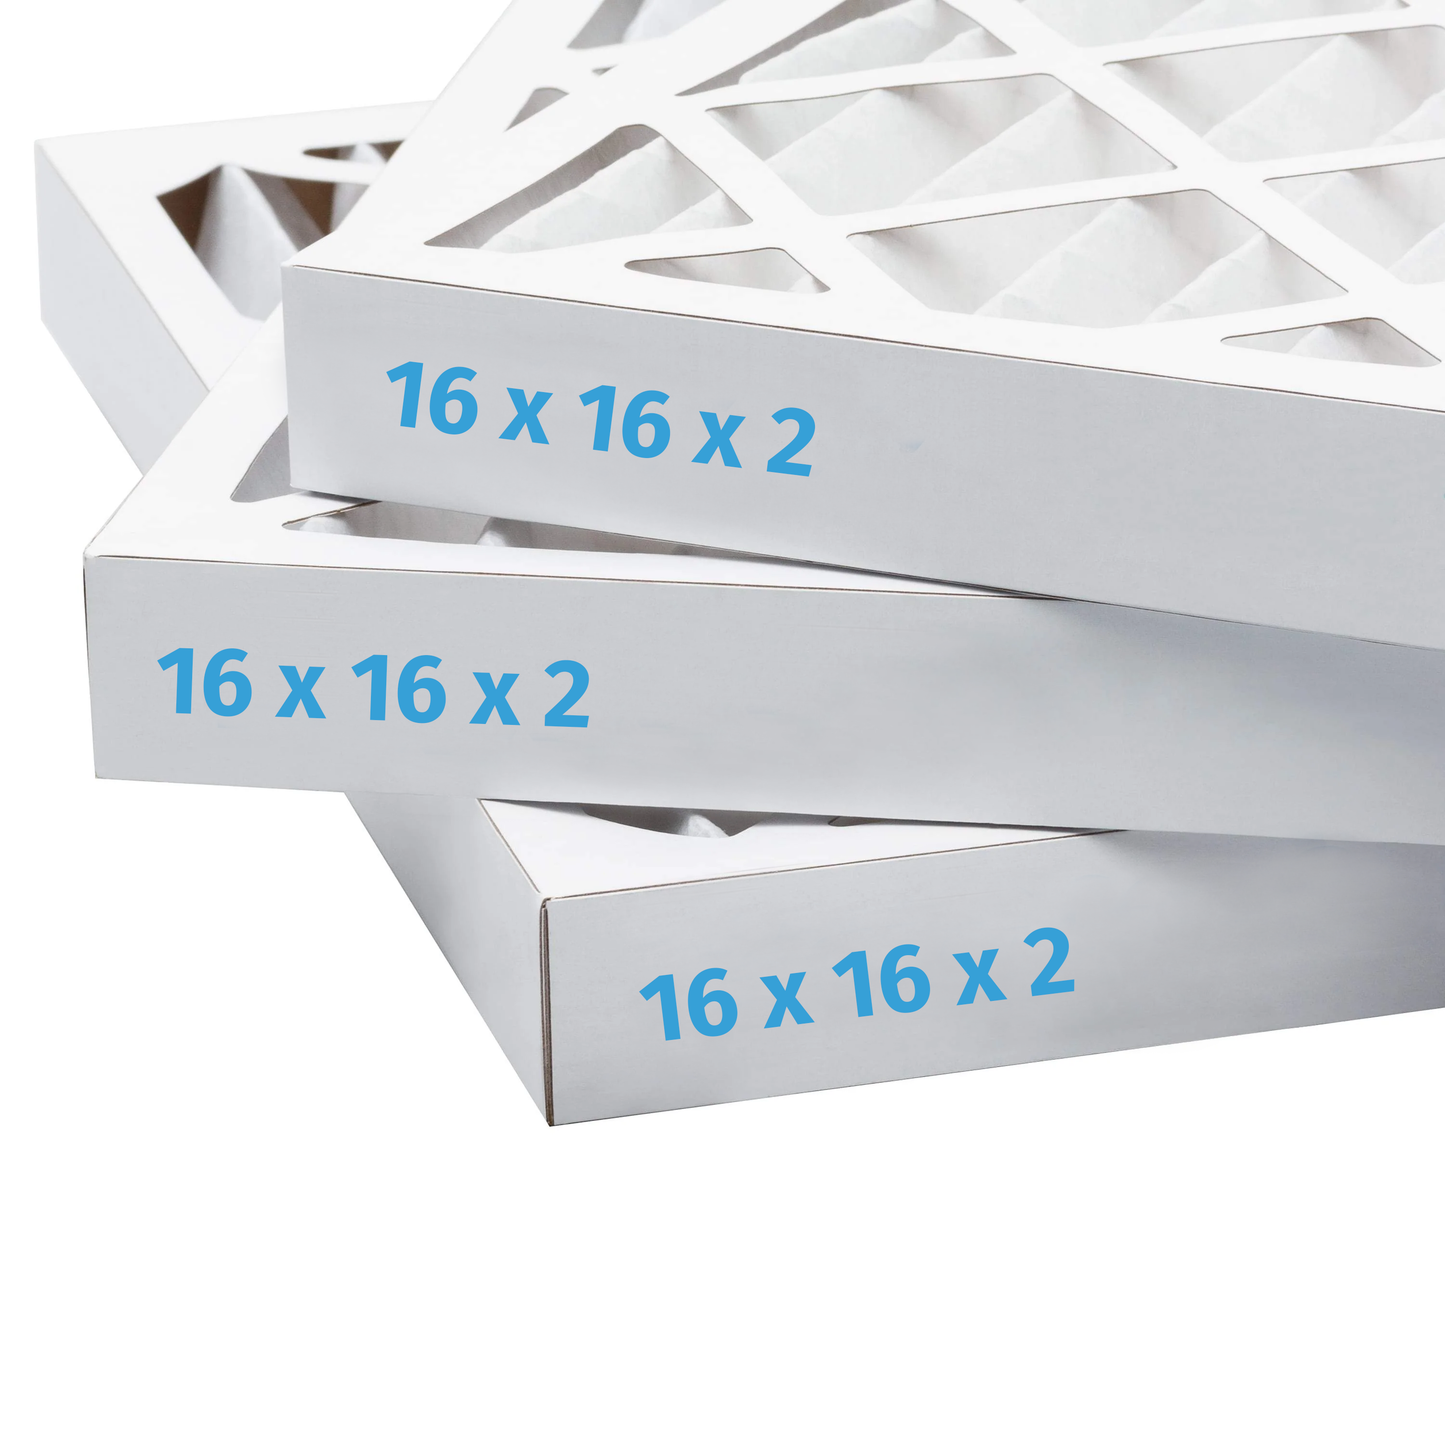 16x16x2 Air Filter - AC Furnace Filter